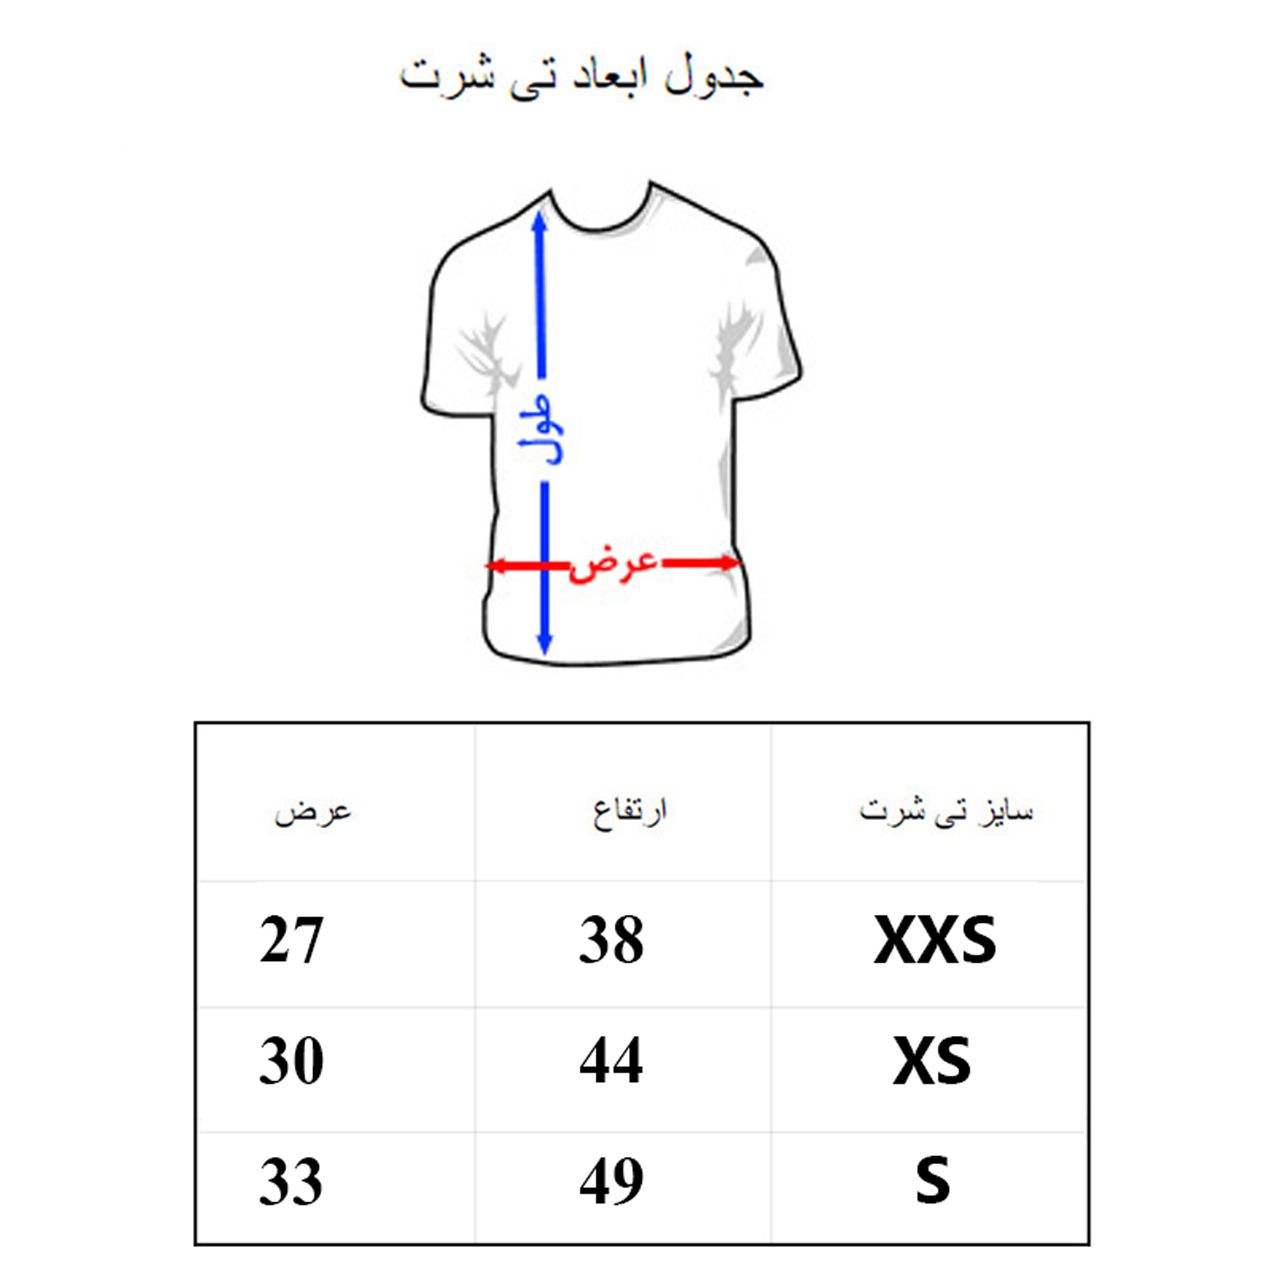 تی شرت آستین کوتاه بچگانه به رسم مدل سونیک کد 1132 -  - 2